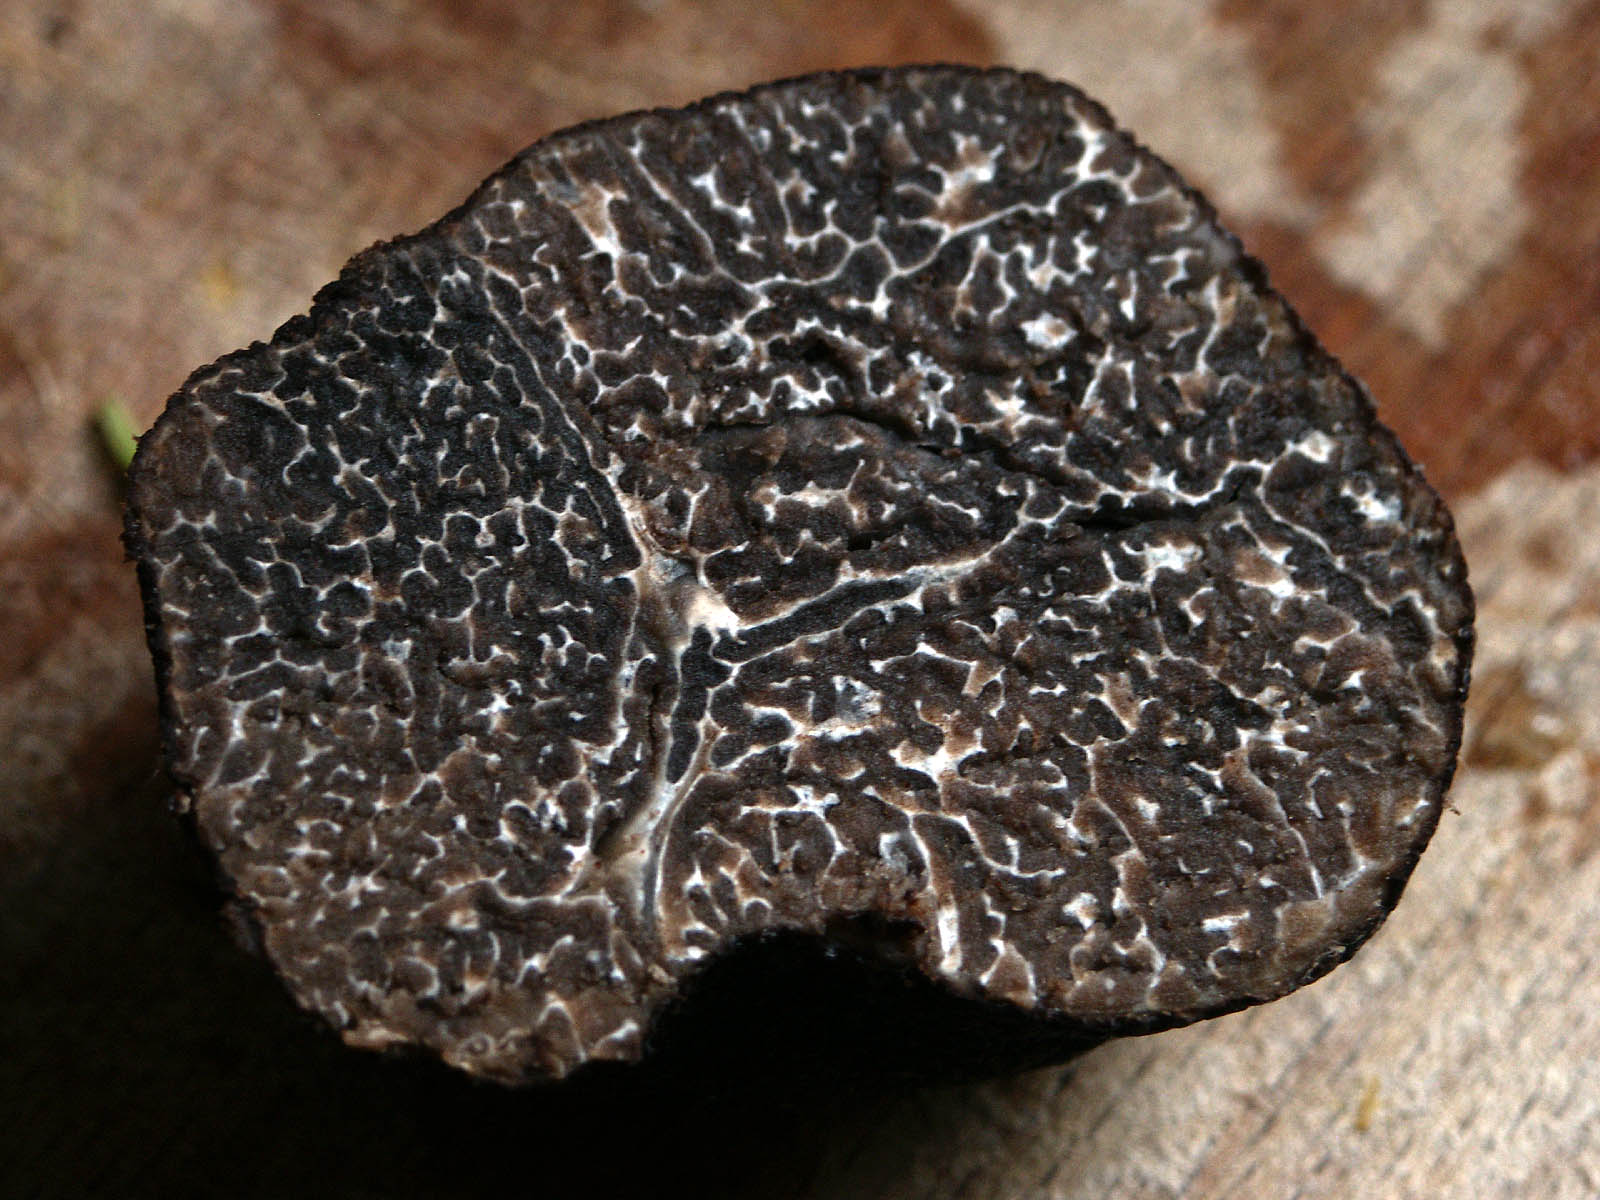 Les veines blanches de la truffe indiquent sa fraîcheur. Plus elle a de veines, meilleure&nbsp;elle sera !&nbsp;© Wazouille, Flickr, cc 